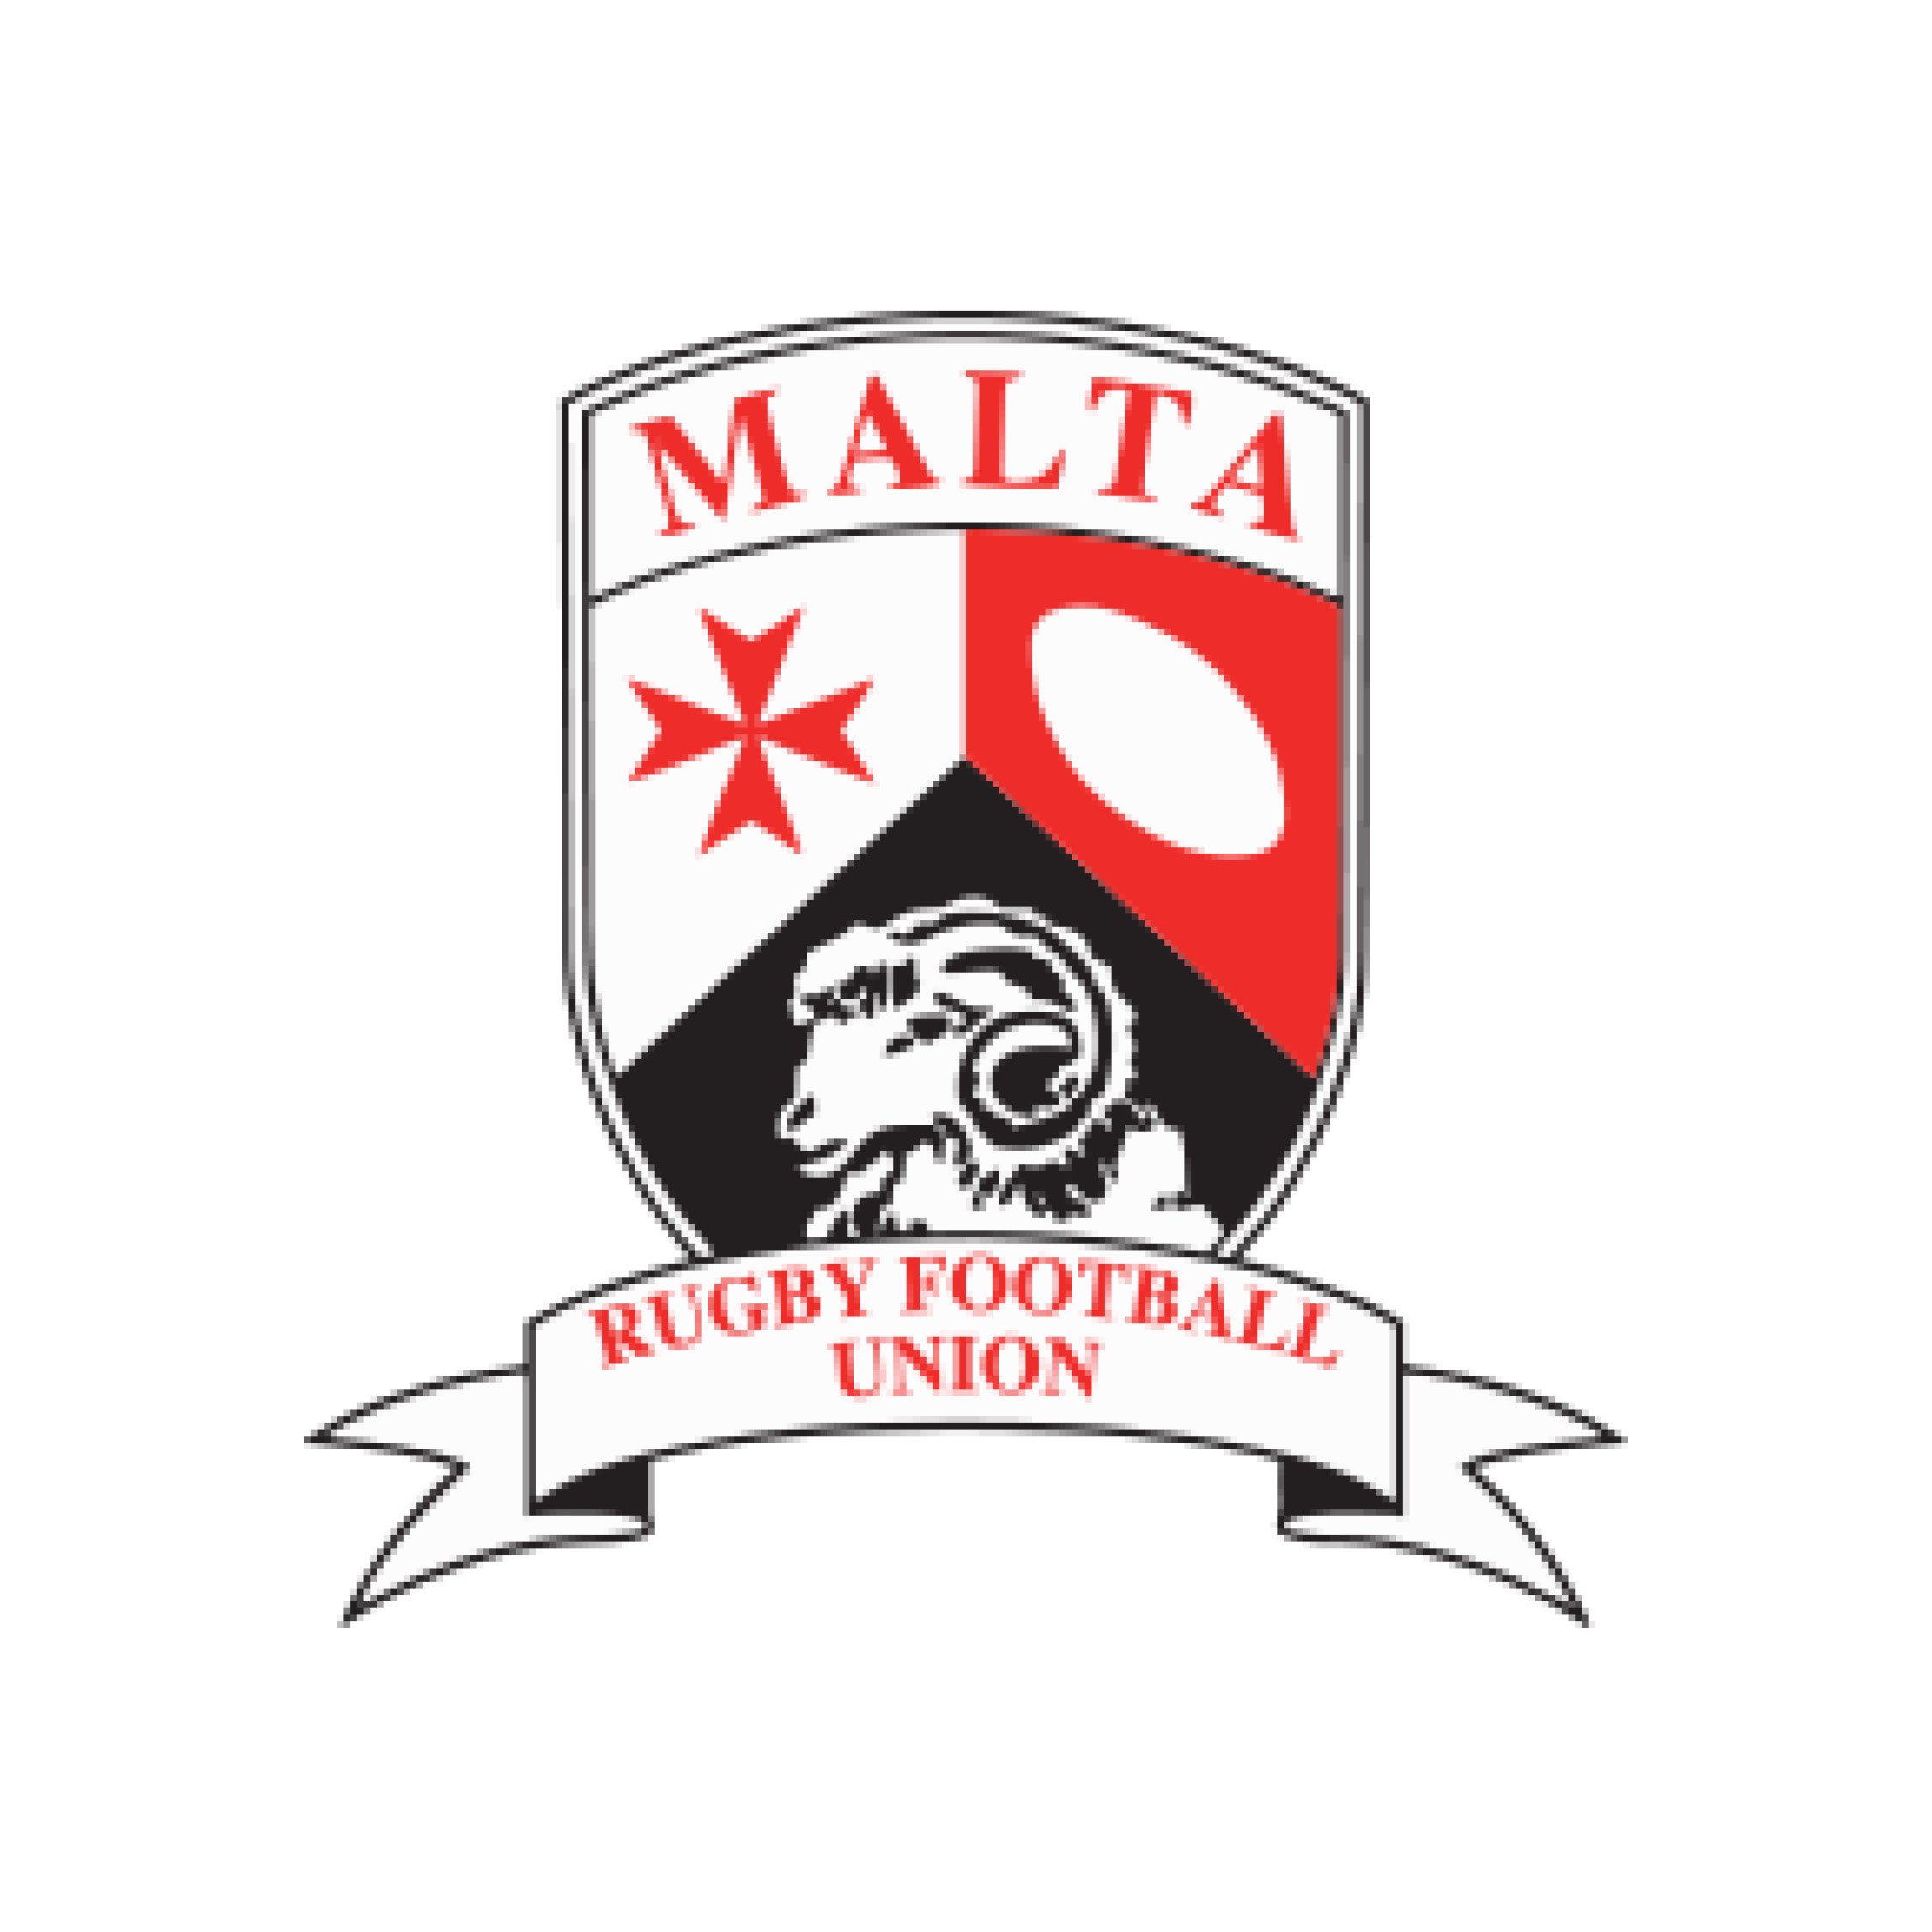 Malta RFU